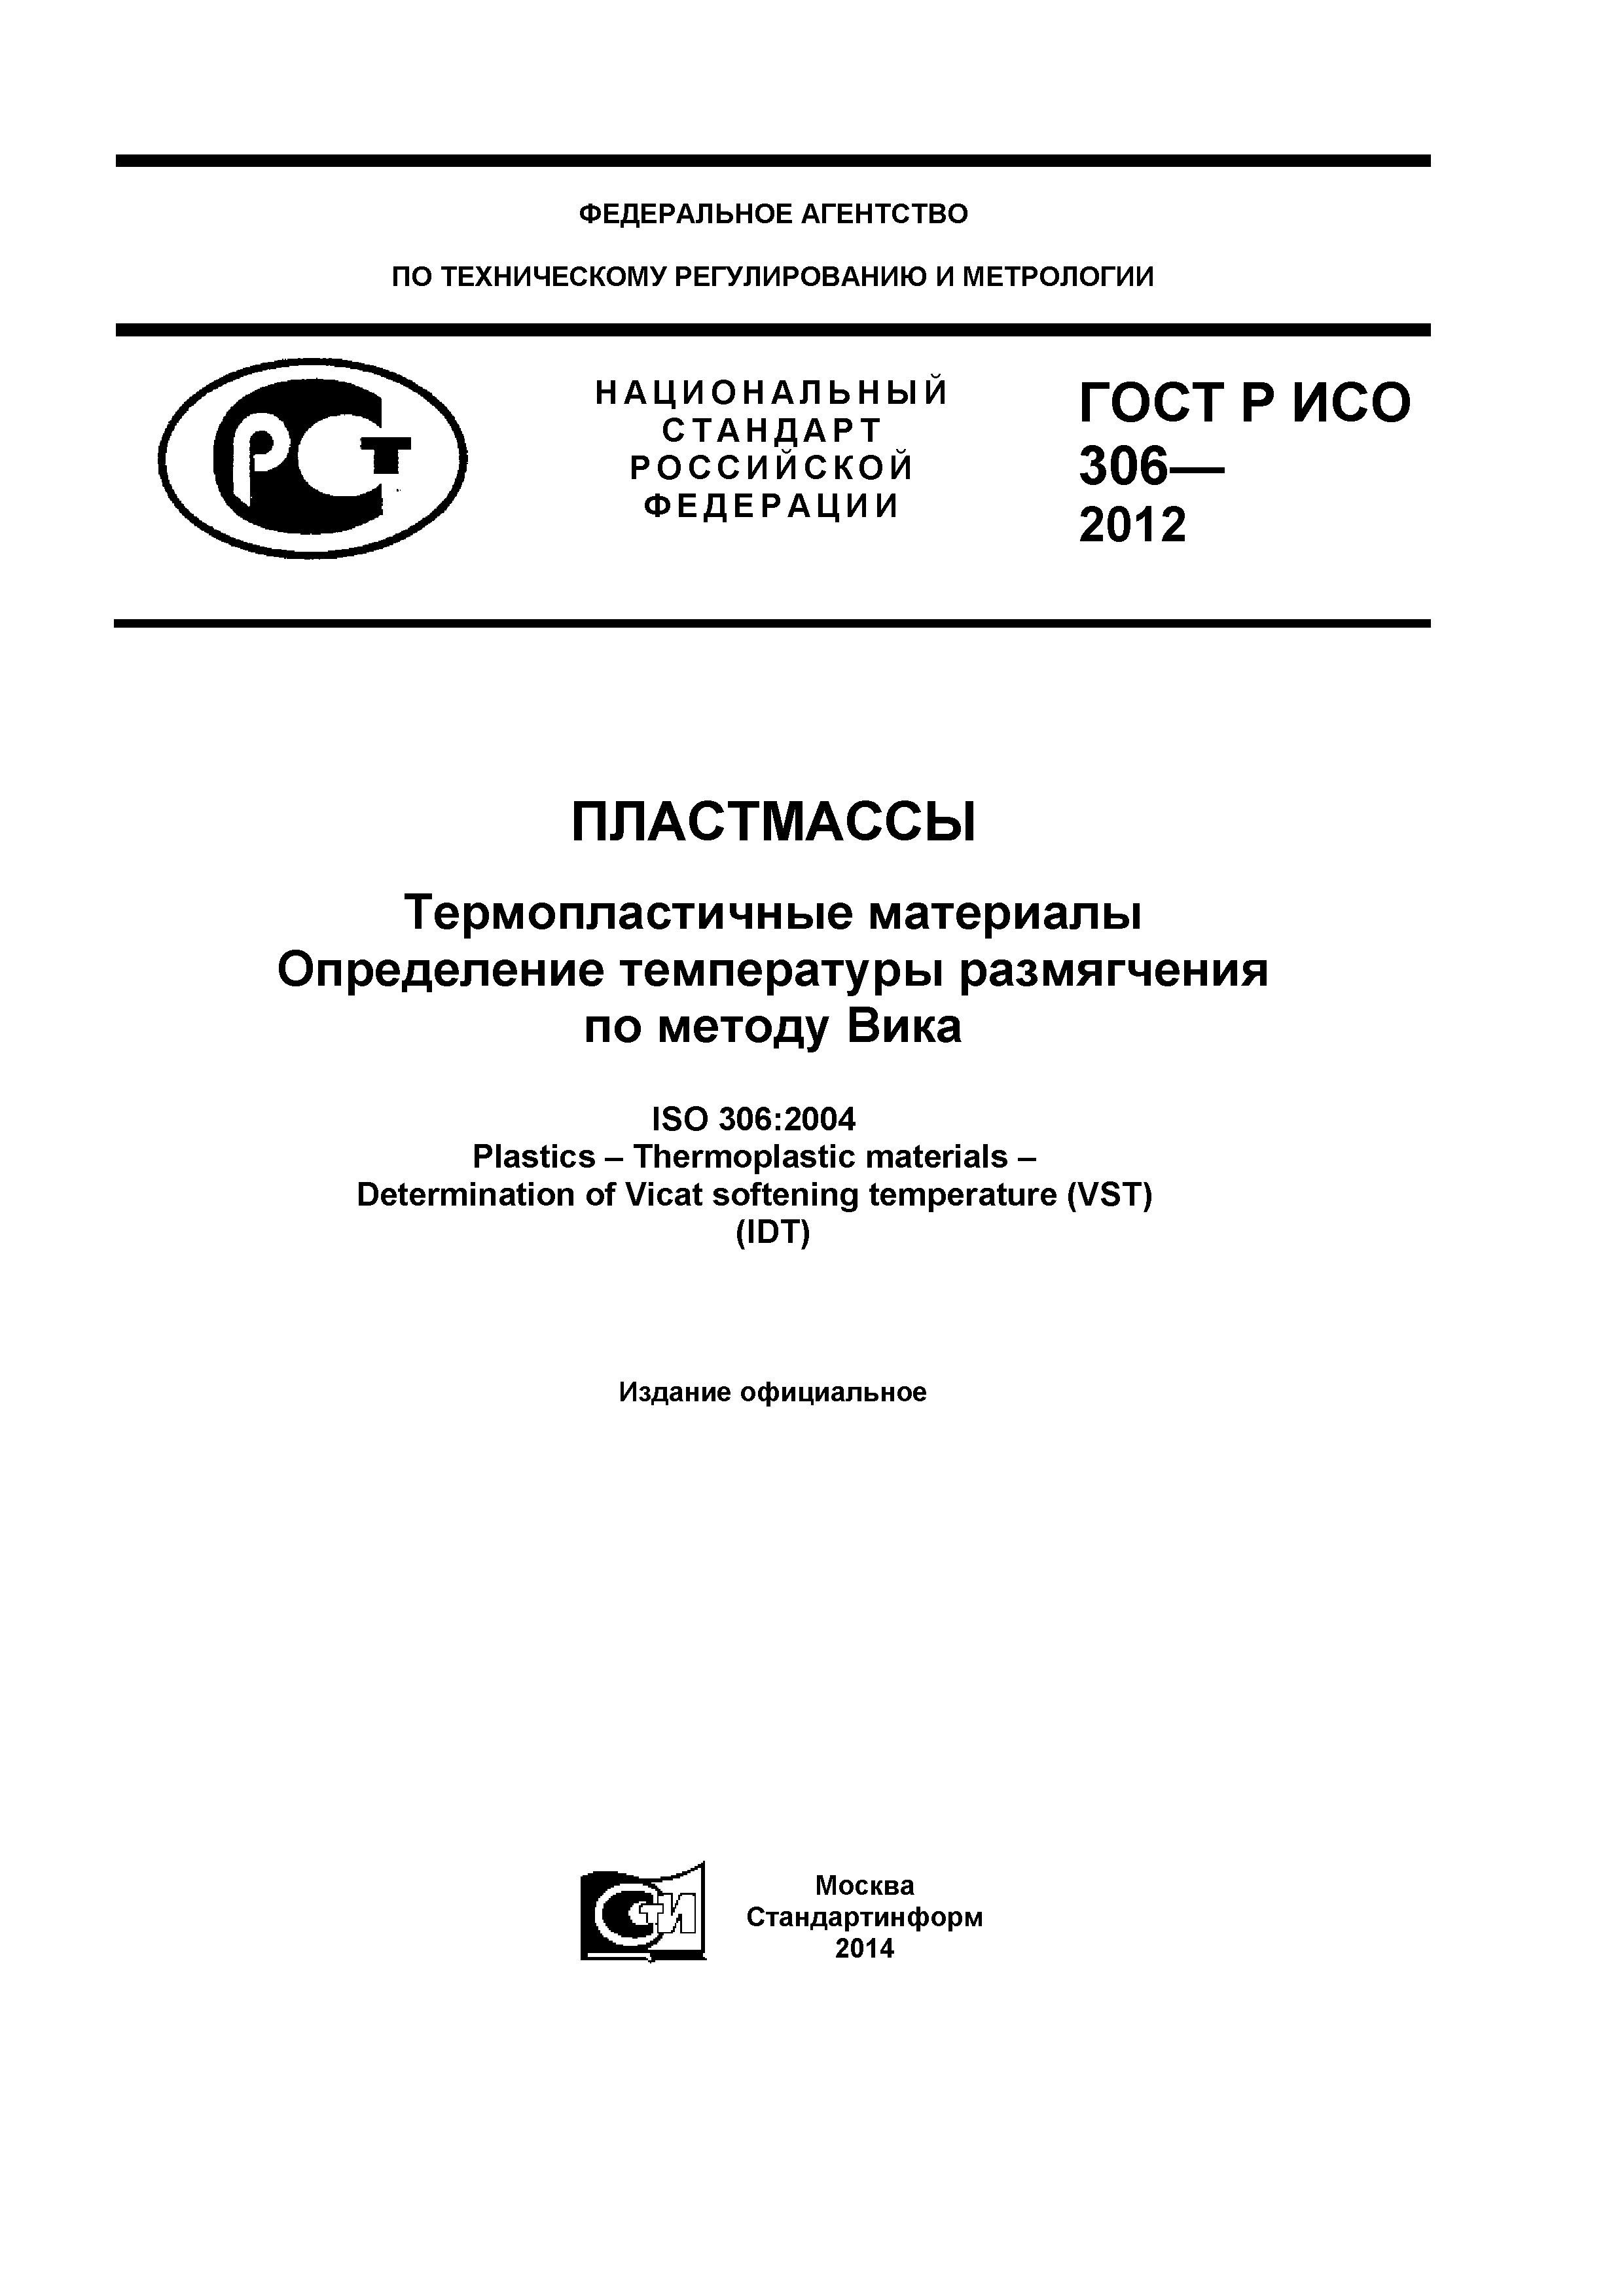 ГОСТ Р ИСО 306-2012